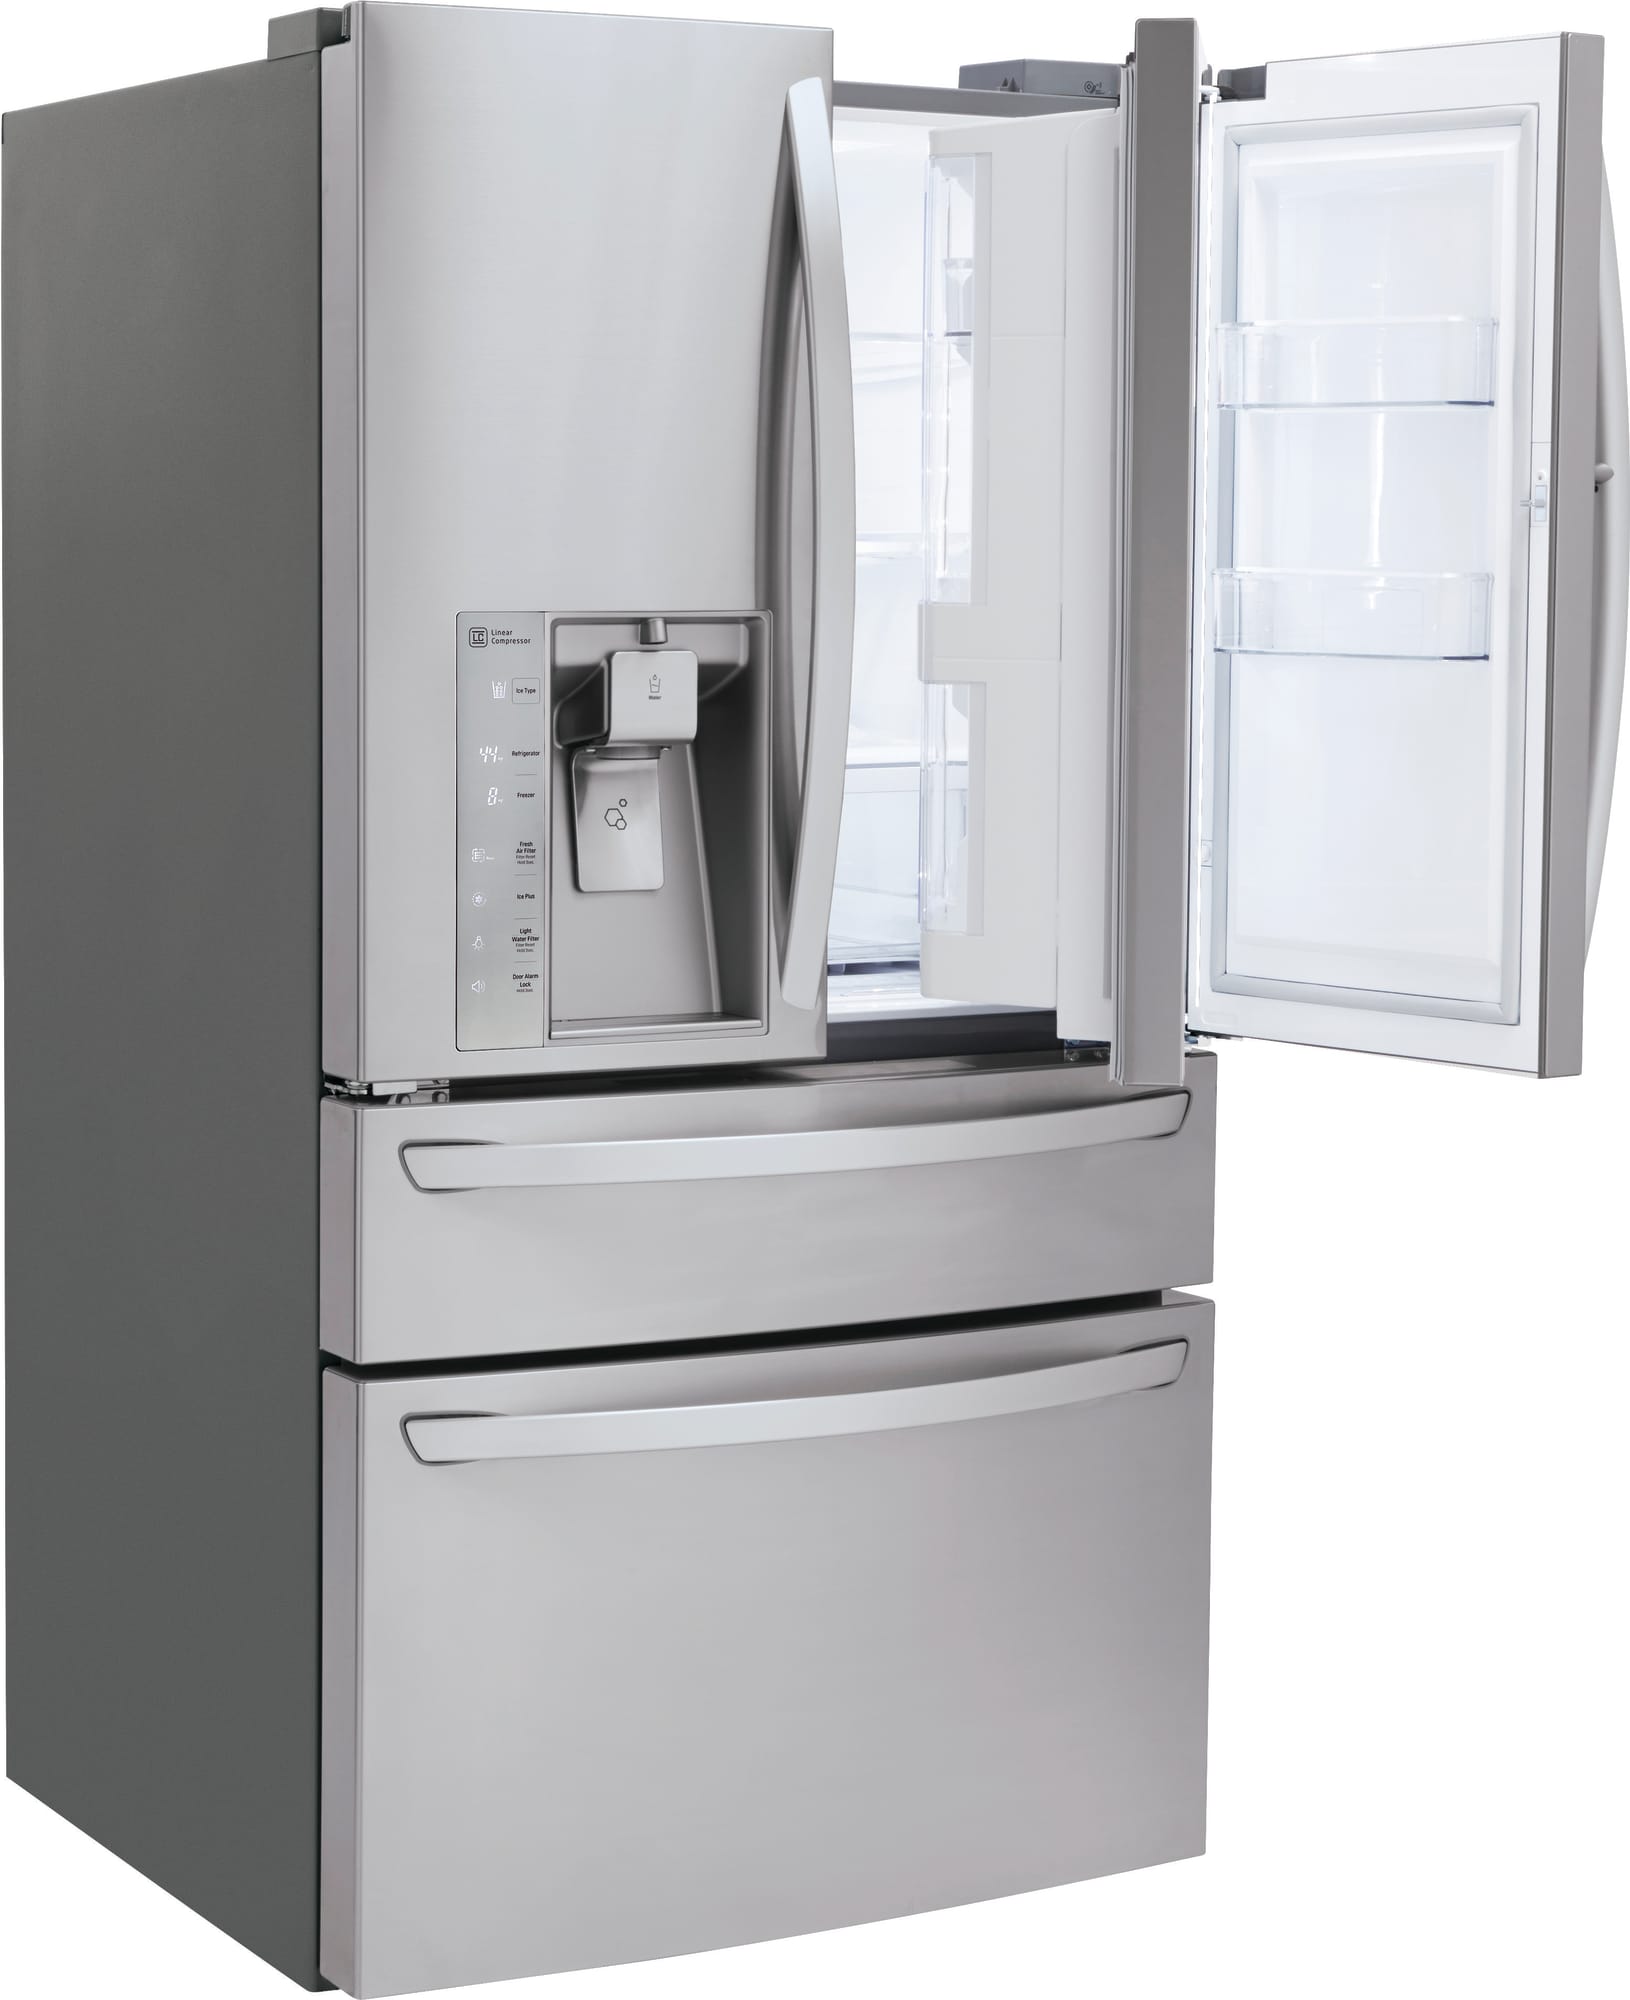 LG LMXS30776S 36 Inch 4-Door French Door Refrigerator with 29.7 cu. ft ...